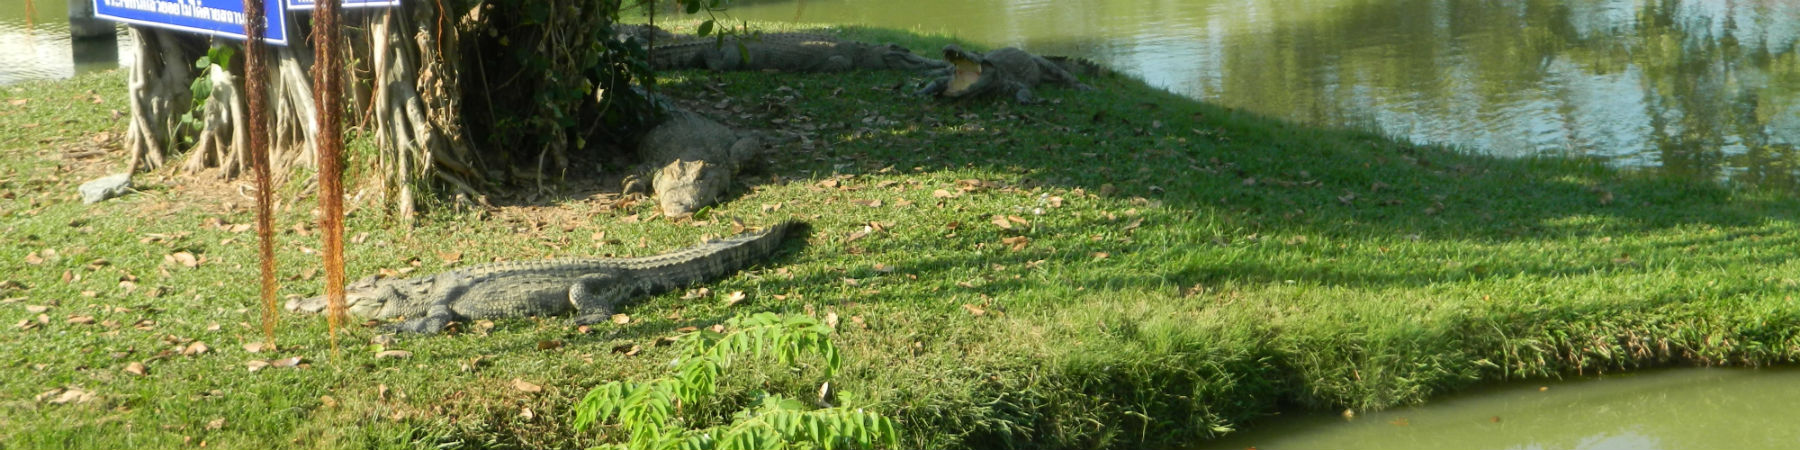 Crocodiles at Bueng Chawak Aquarium, Doem Bang Nang Buat District, Suphanburi Province